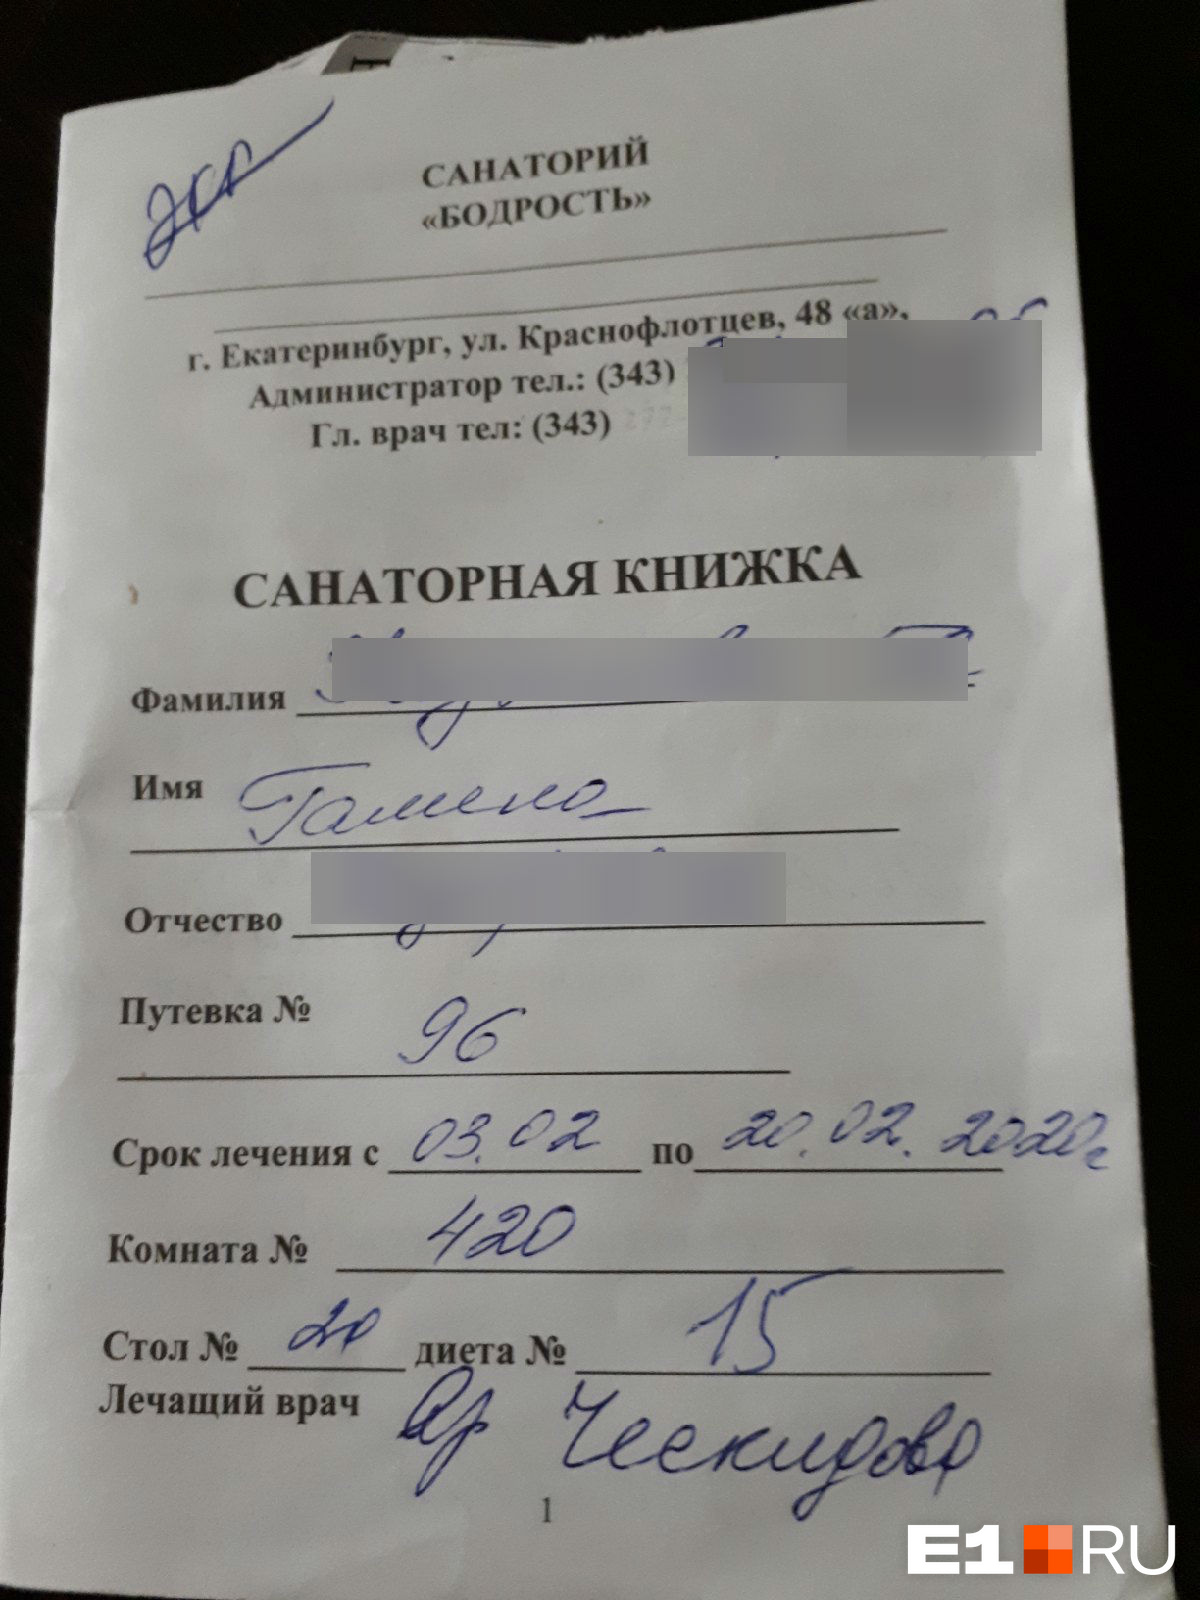 Женщина заплатила 25 600 рублей за 18 дней в санатории